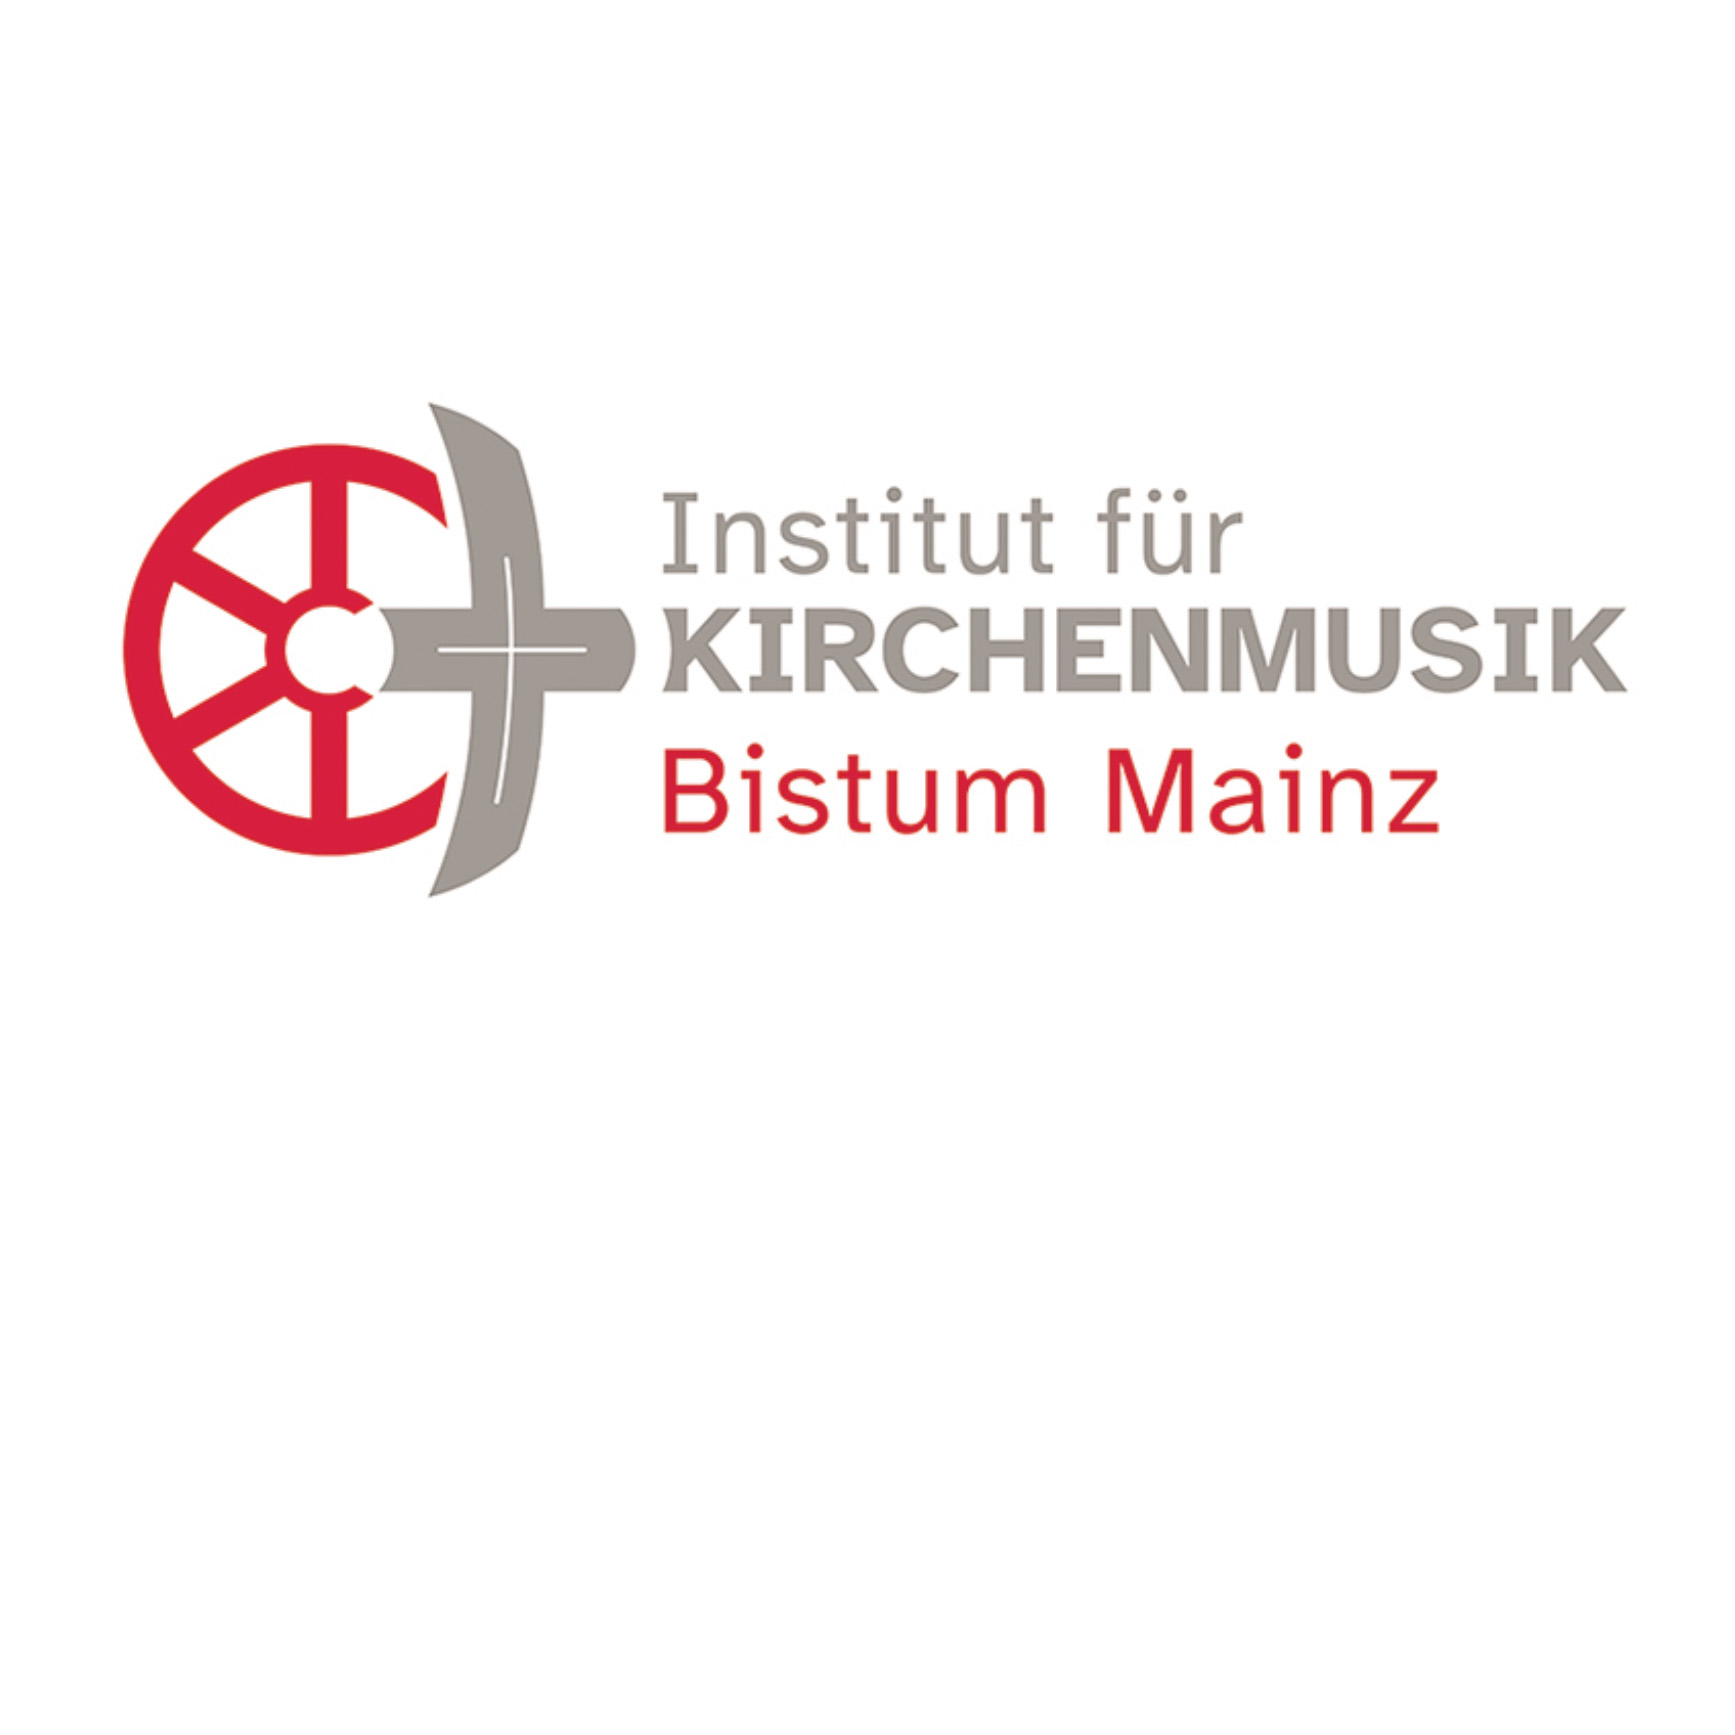 Institut für Kirchenmusik (c) Bistum Mainz